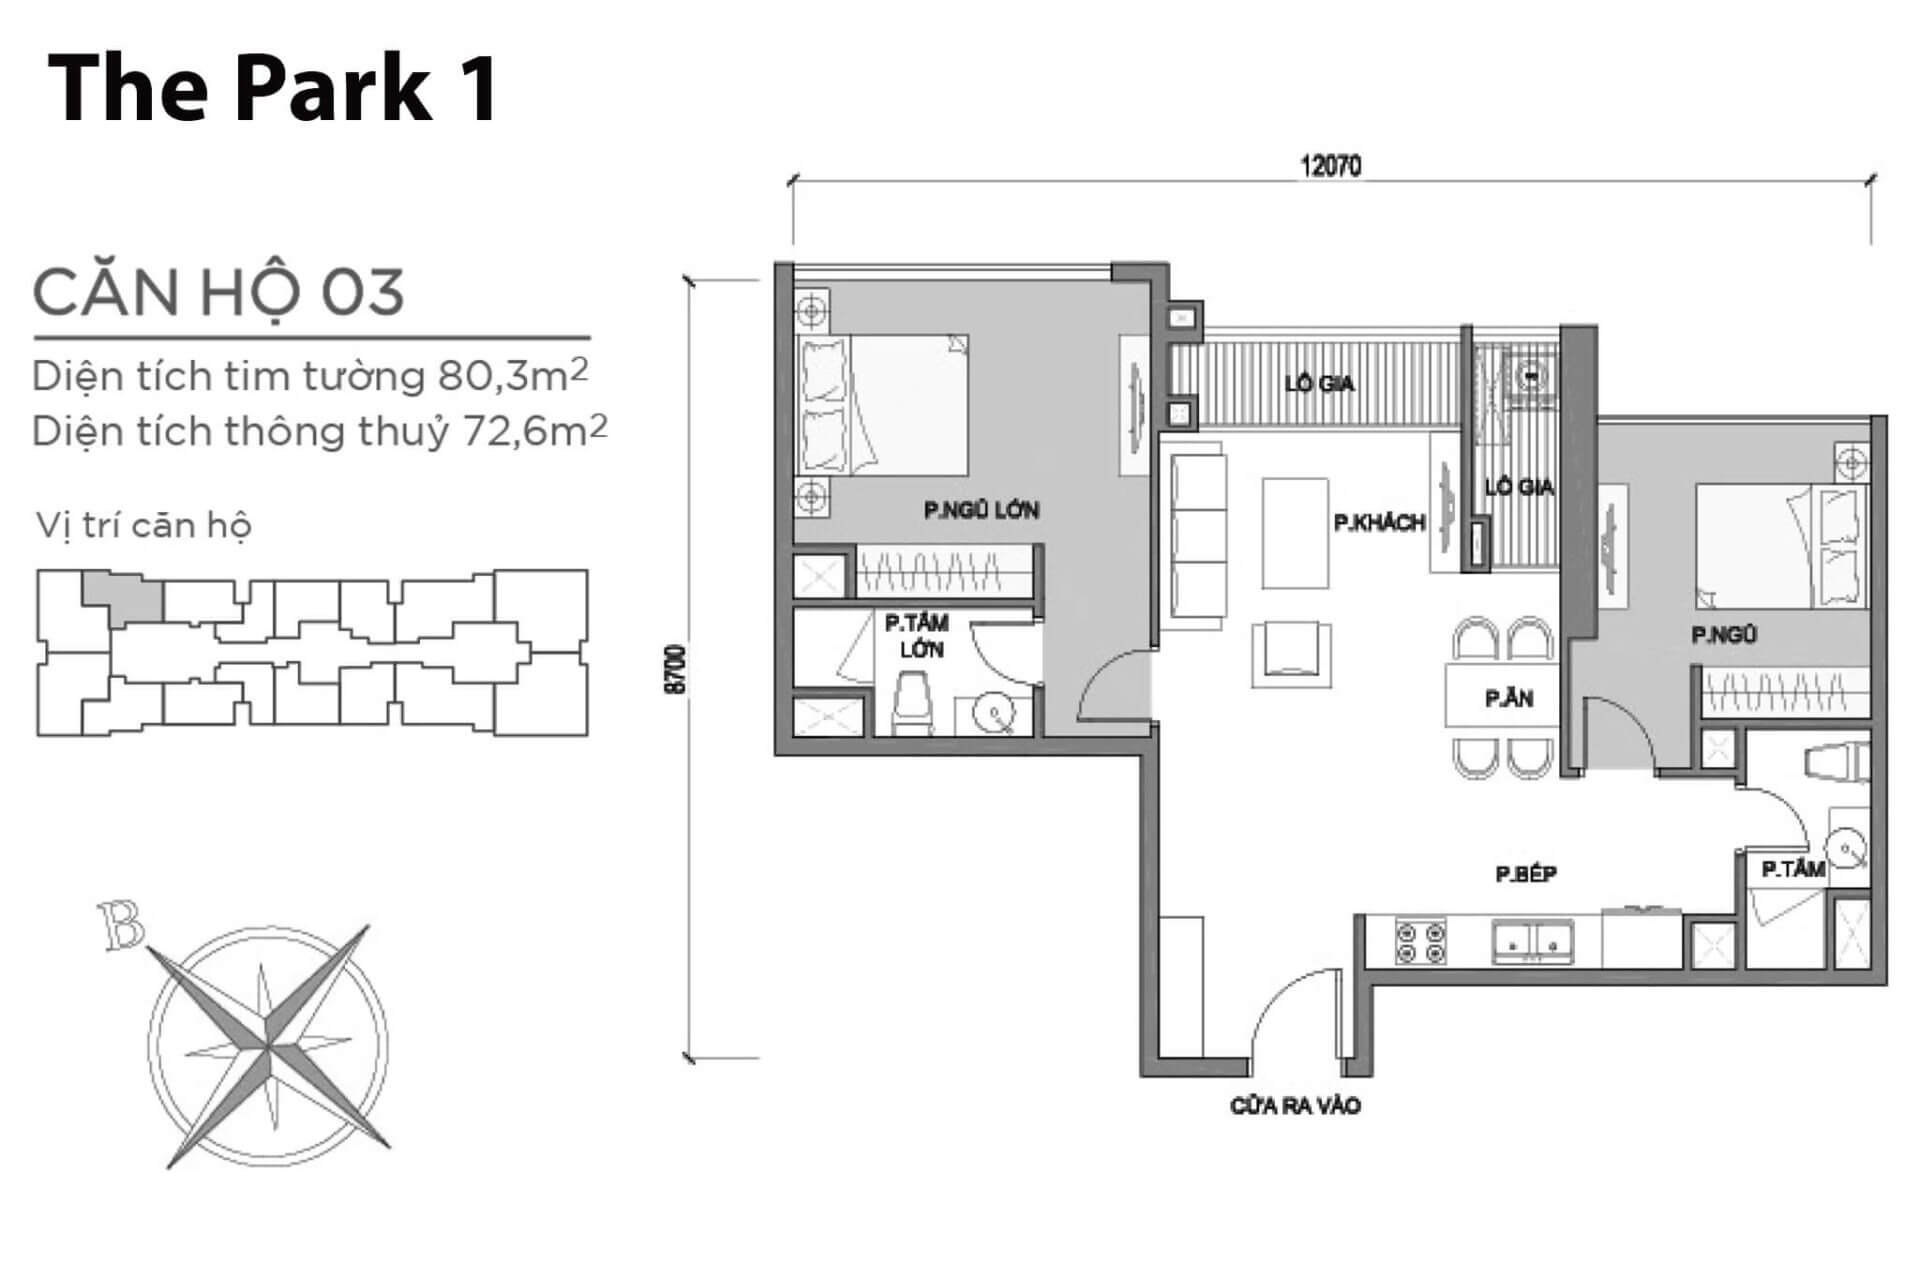 mặt bằng layout căn hộ số 3 Park 1 Vinhomes Central Park